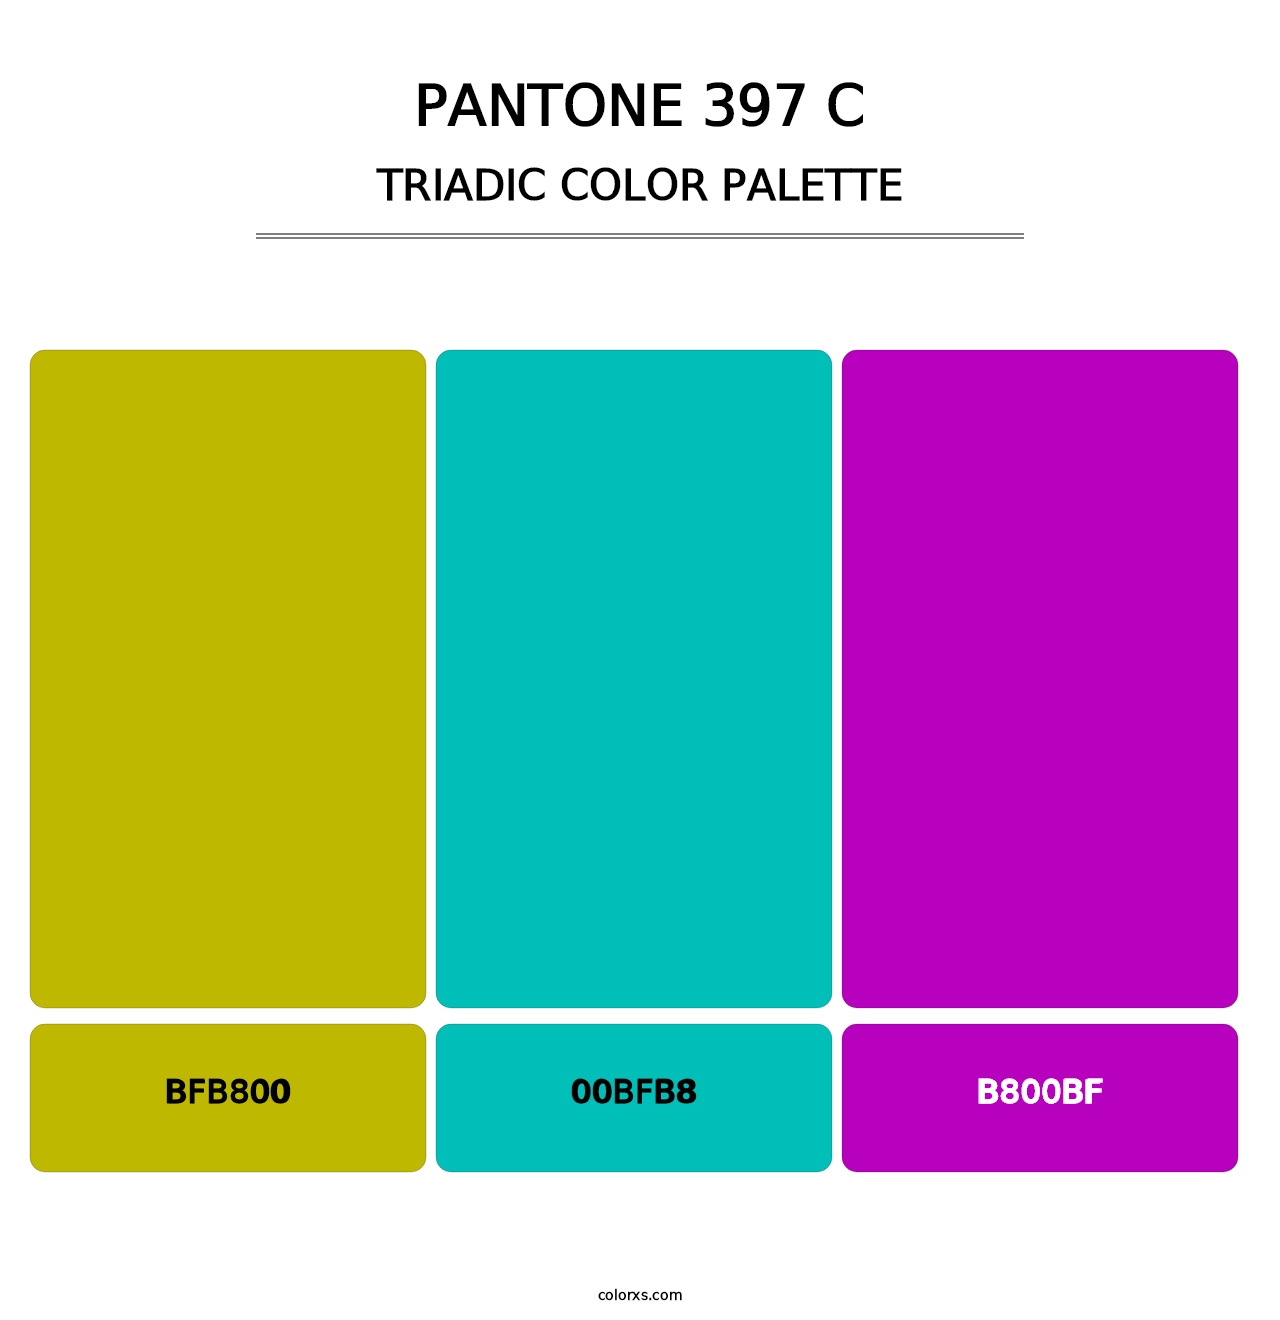 PANTONE 397 C - Triadic Color Palette